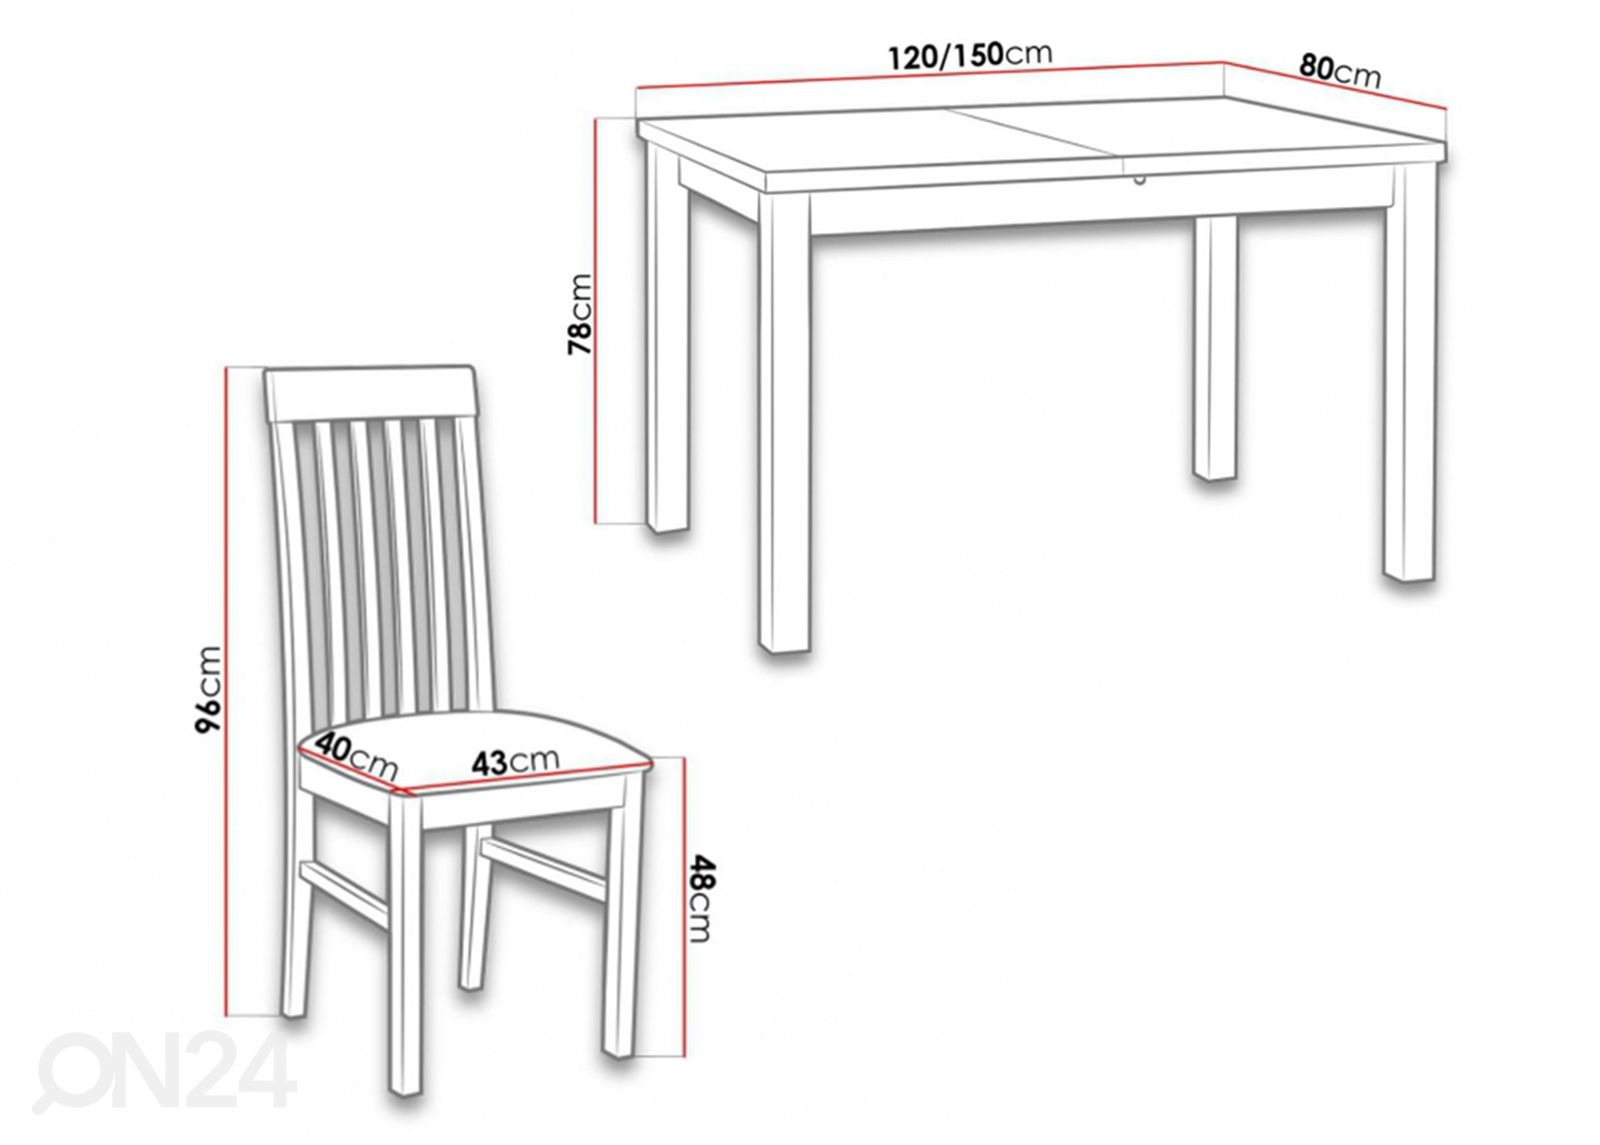 Удлиняющийся обеденный стол 80x120-150 cm + 5 стульев увеличить размеры